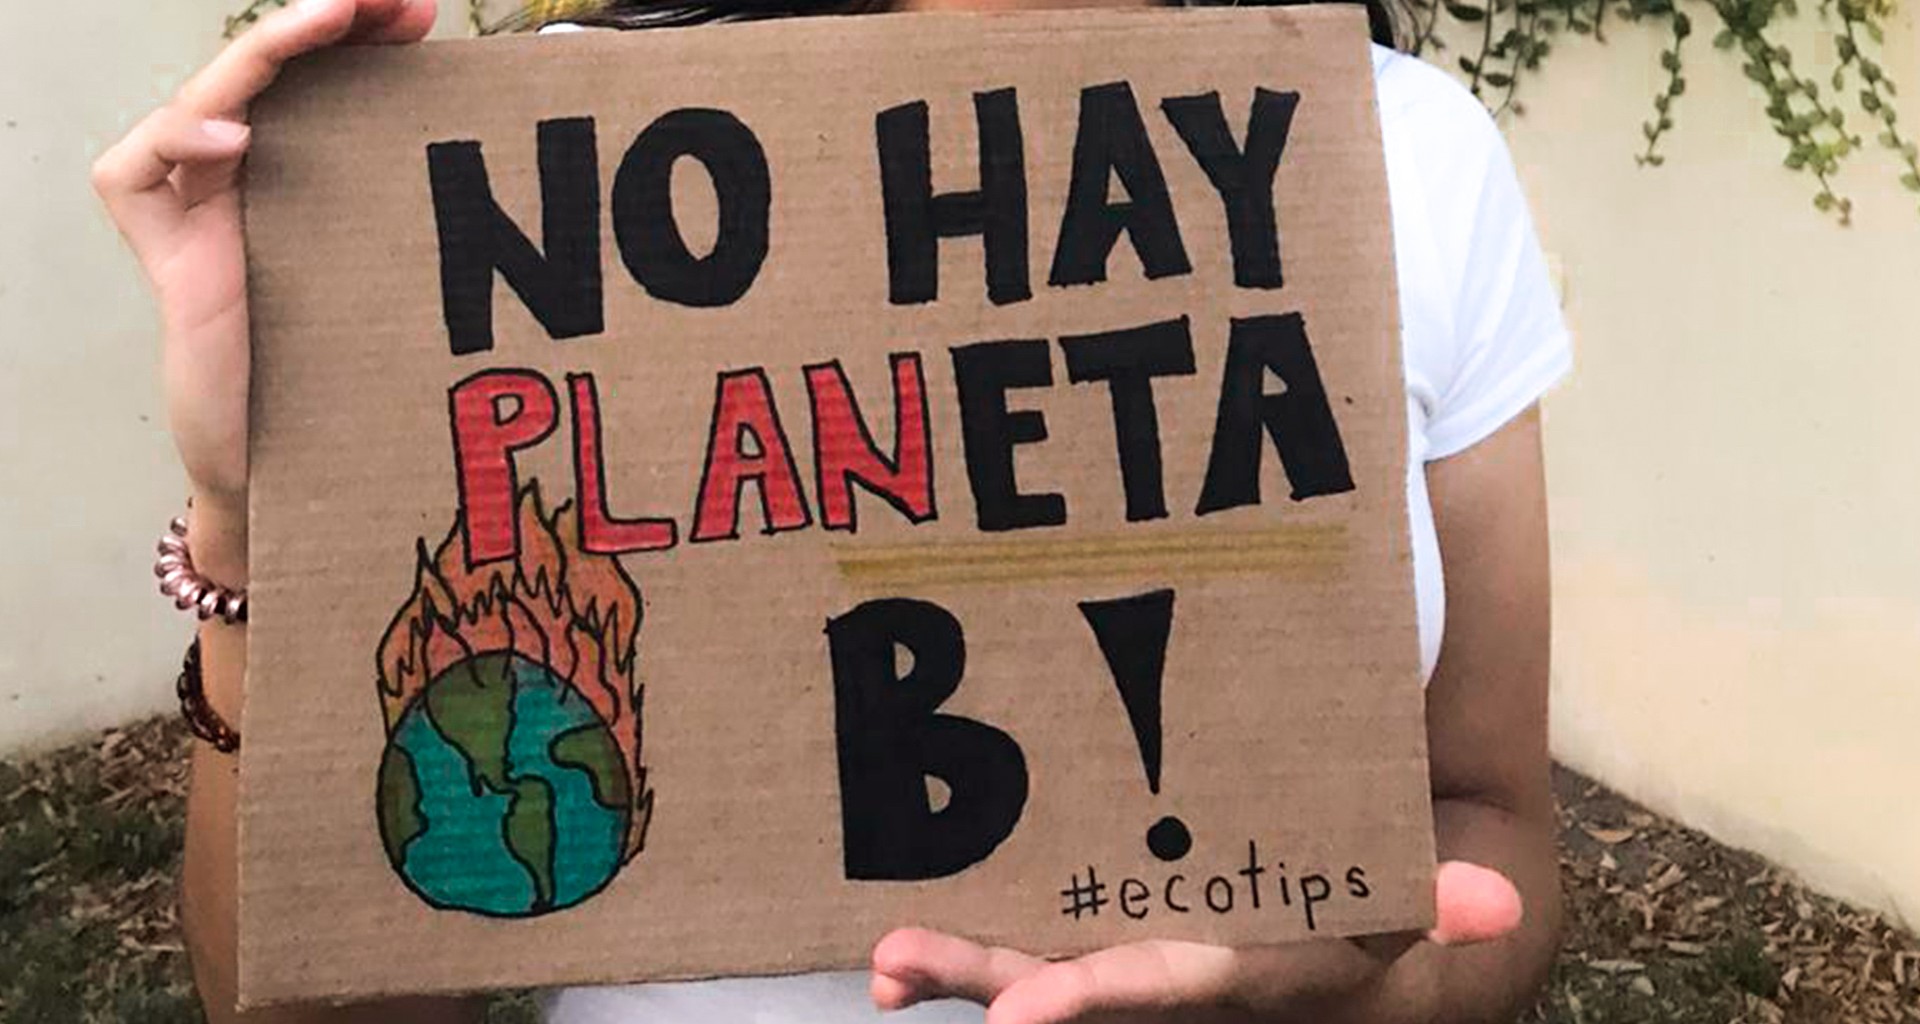 Melissa sosteniendo un cartel que dice "No hay planeta B"